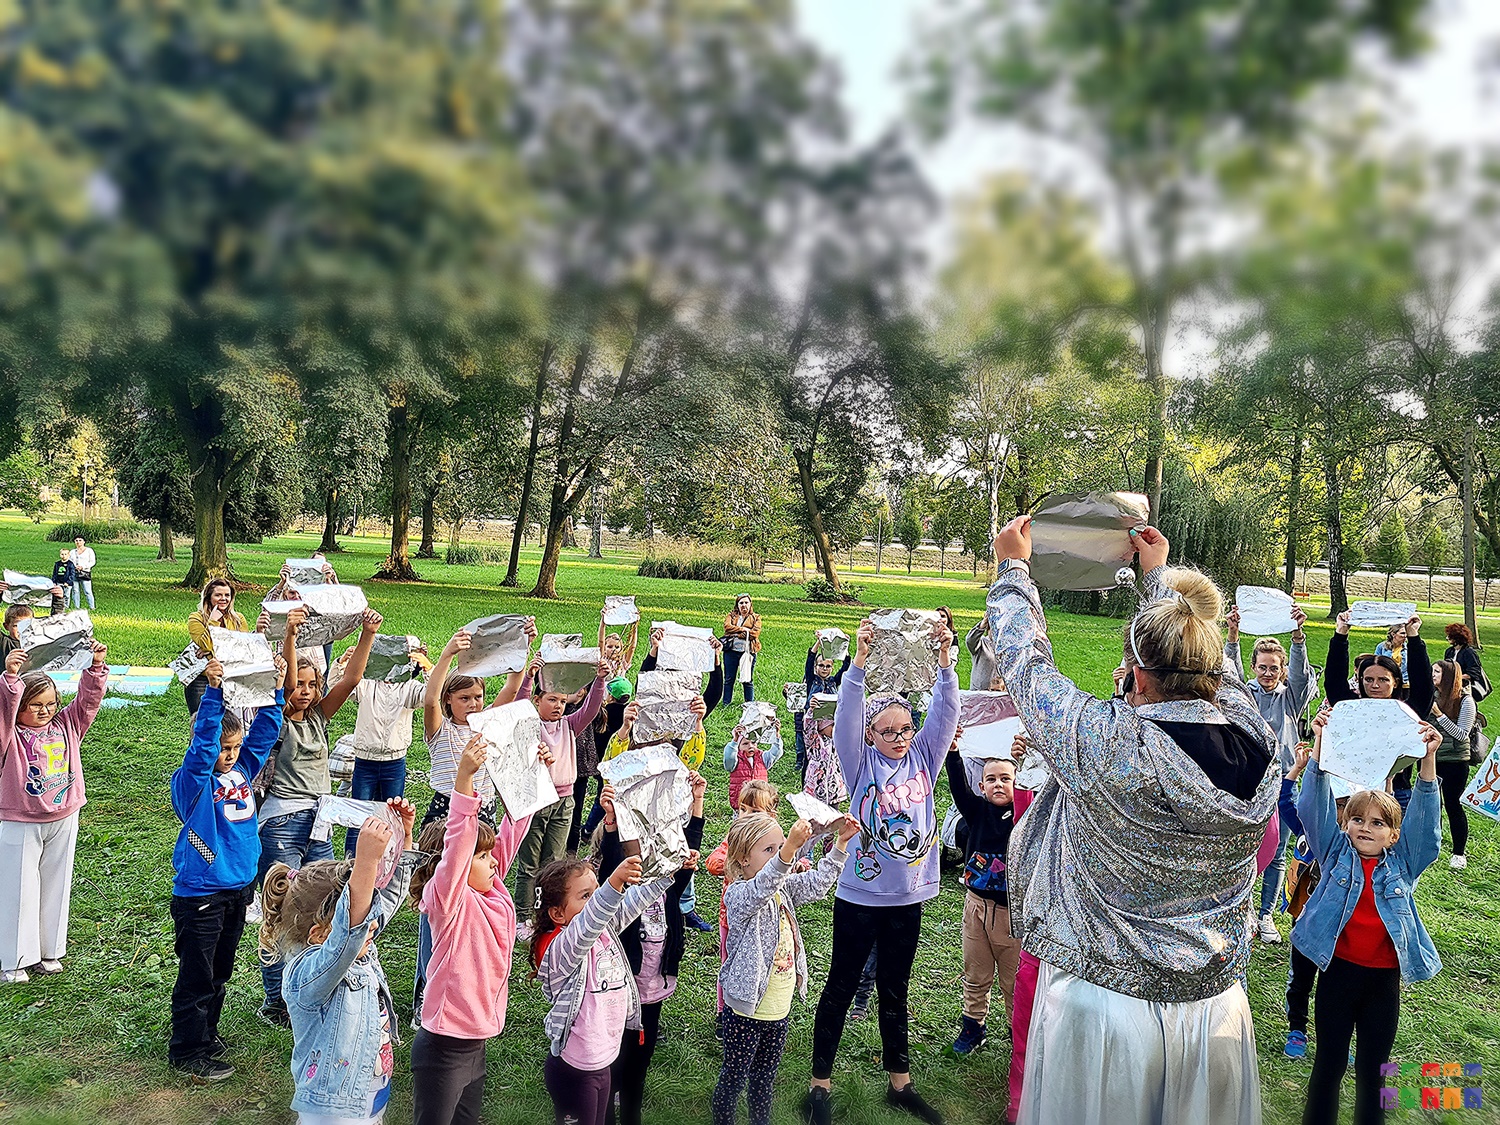 Zdjęcie przedstawiające grupę dzieci siedzących, stojących oraz skaczących w parku. W rękach trzymają srebrne kartki. W tle widać drzewa parkowe.